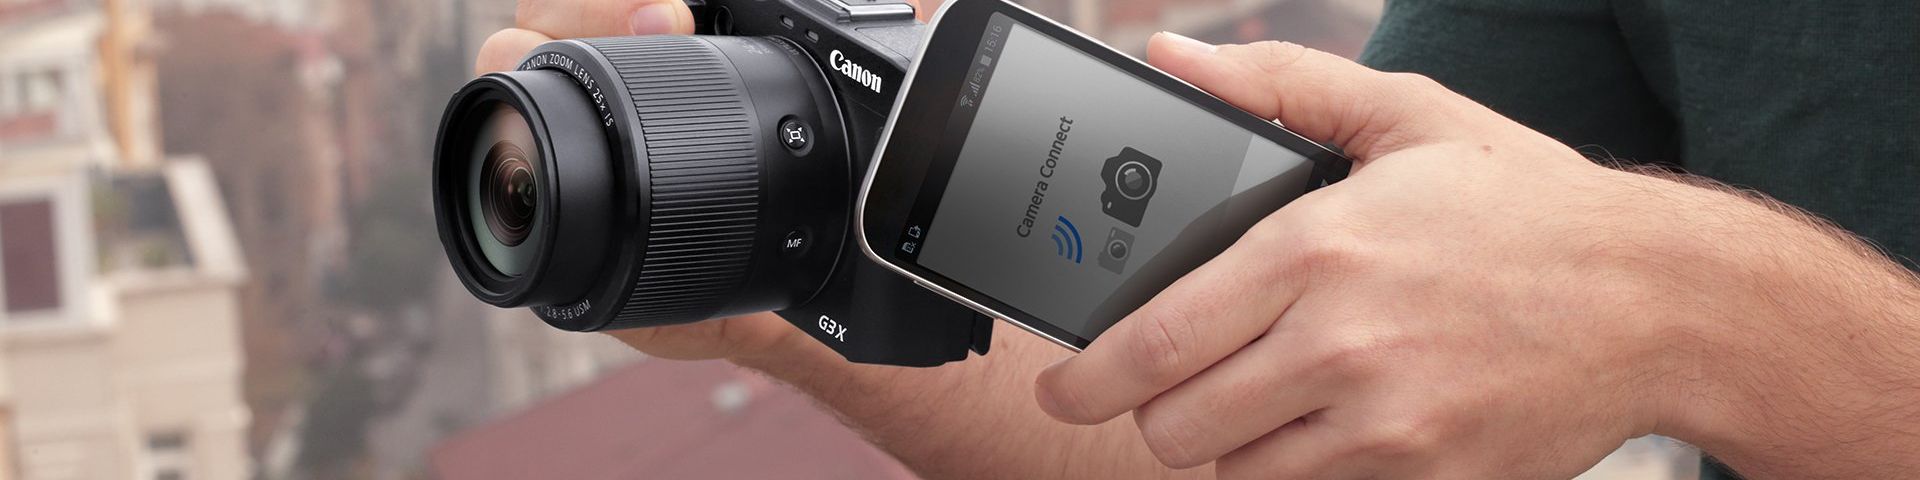 Canon wi-fi compact cameras